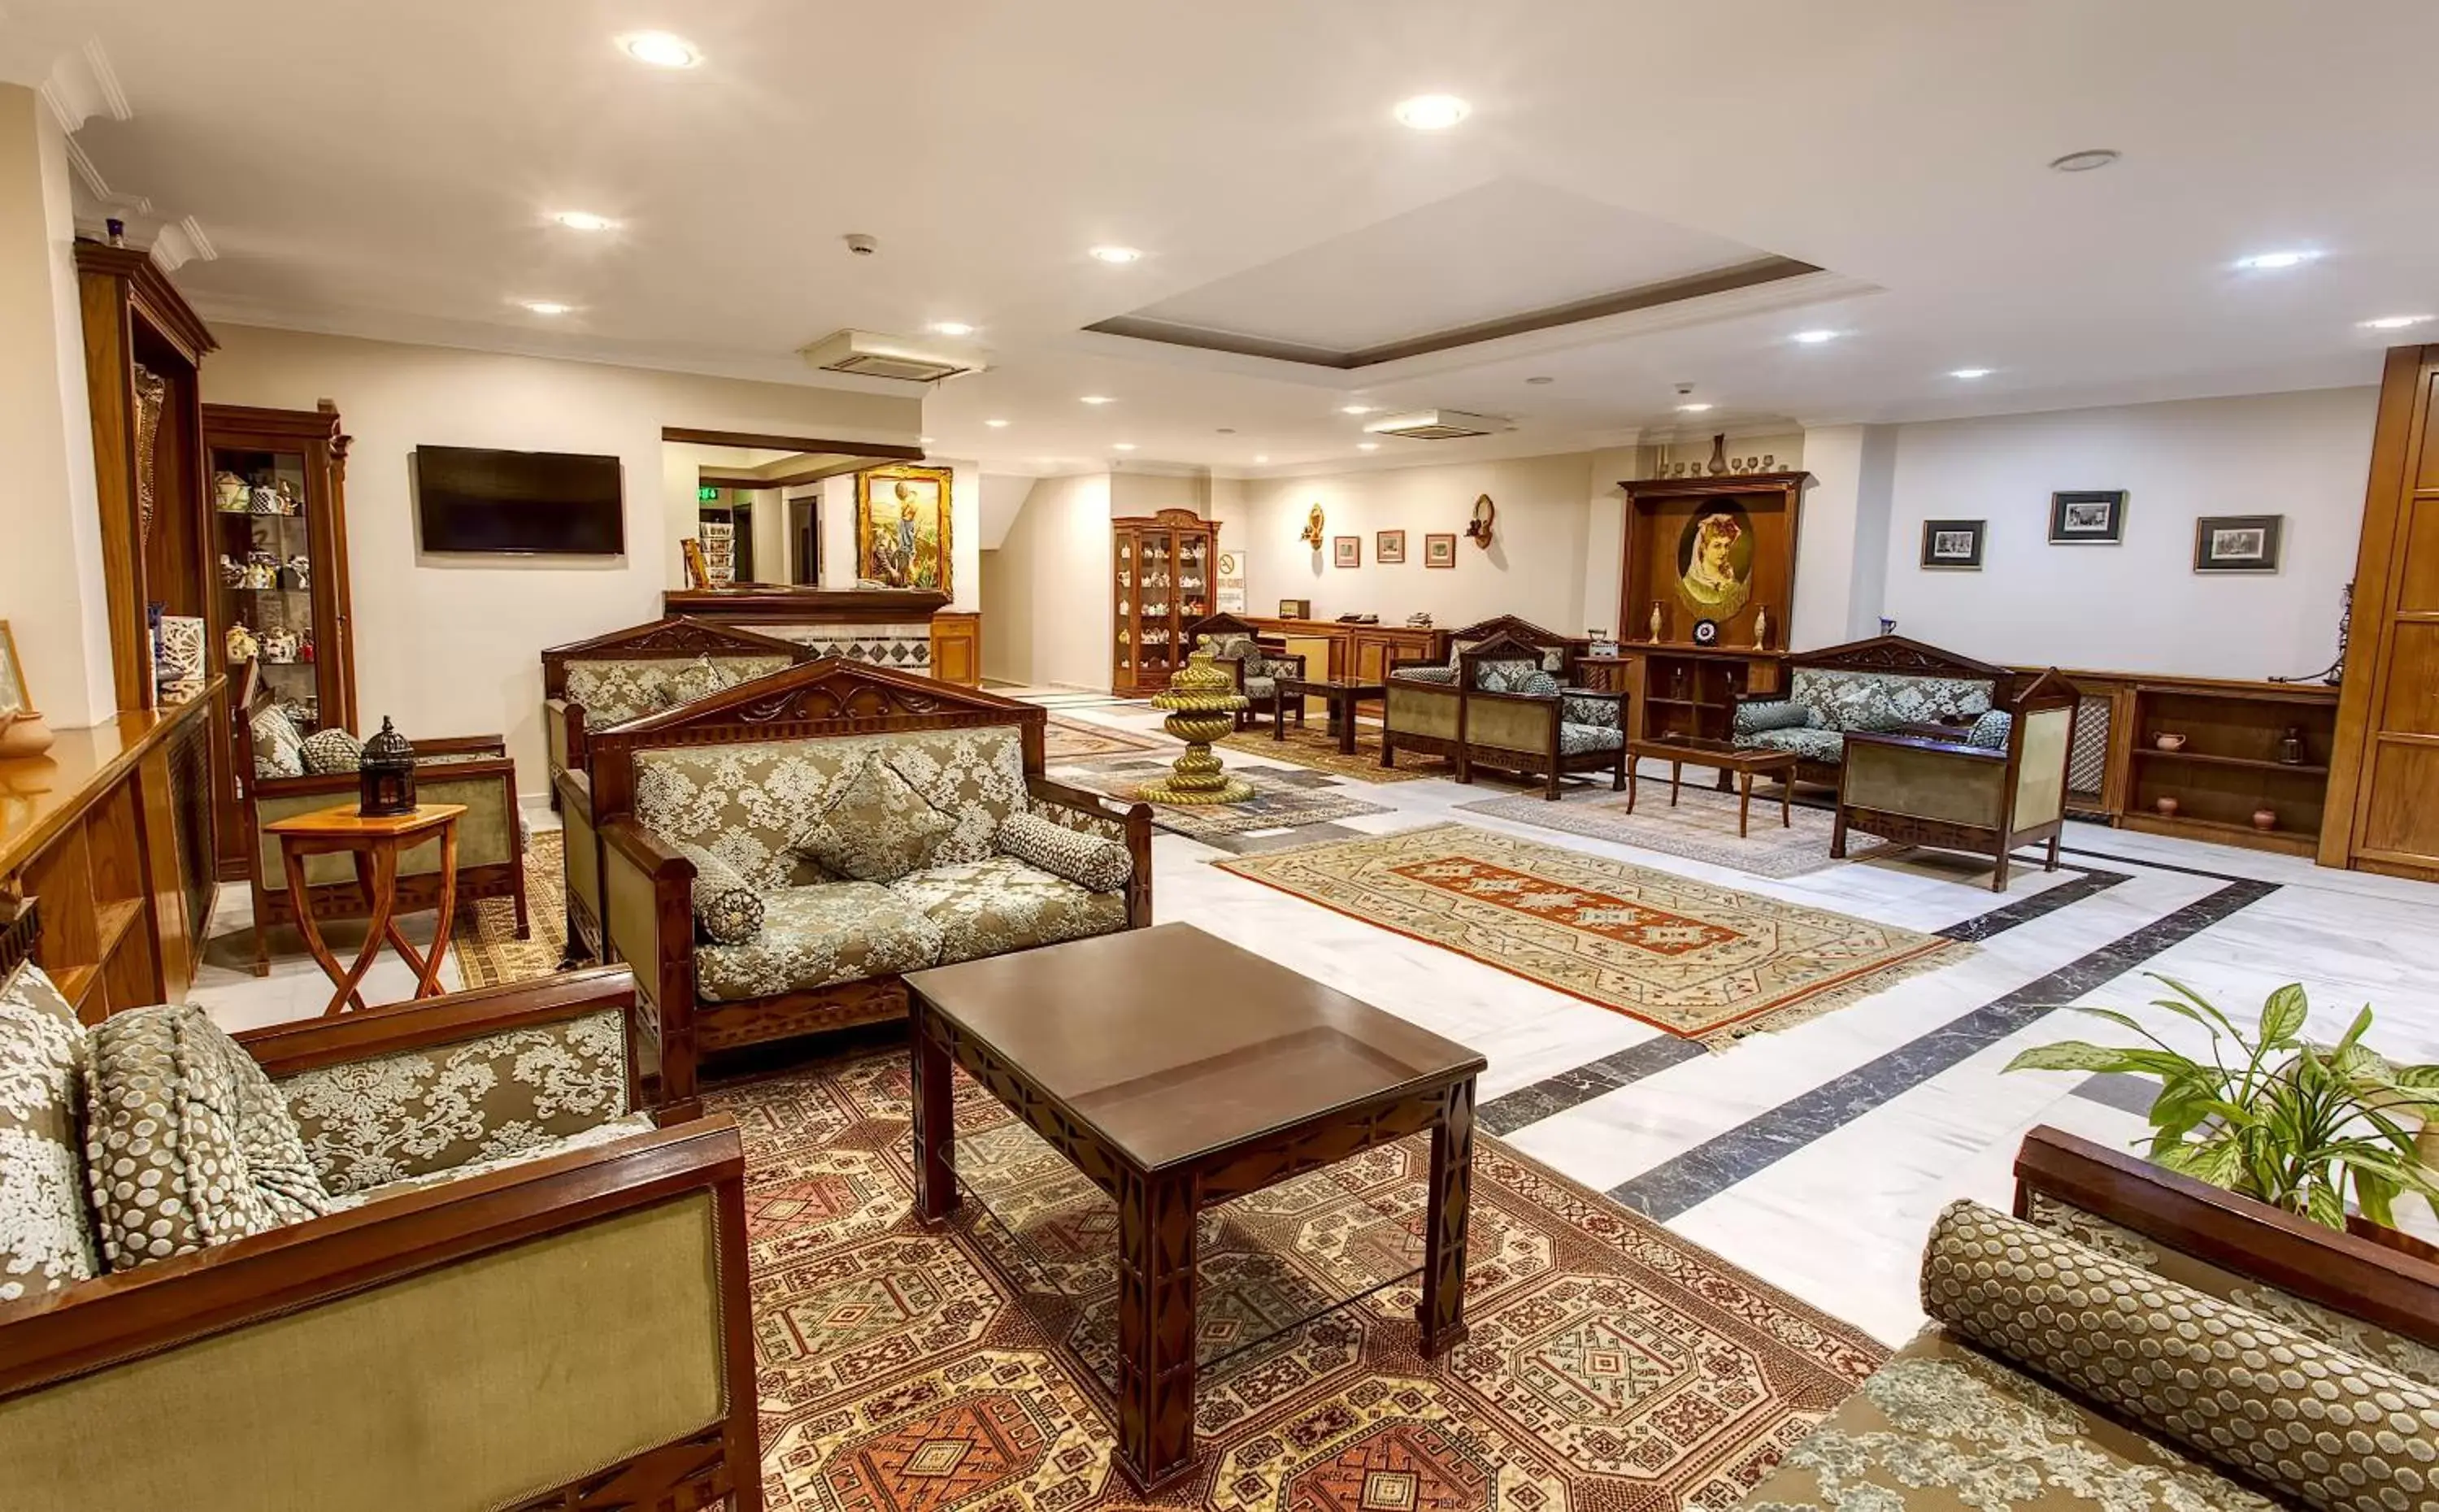 Lobby or reception in Hotel Saba